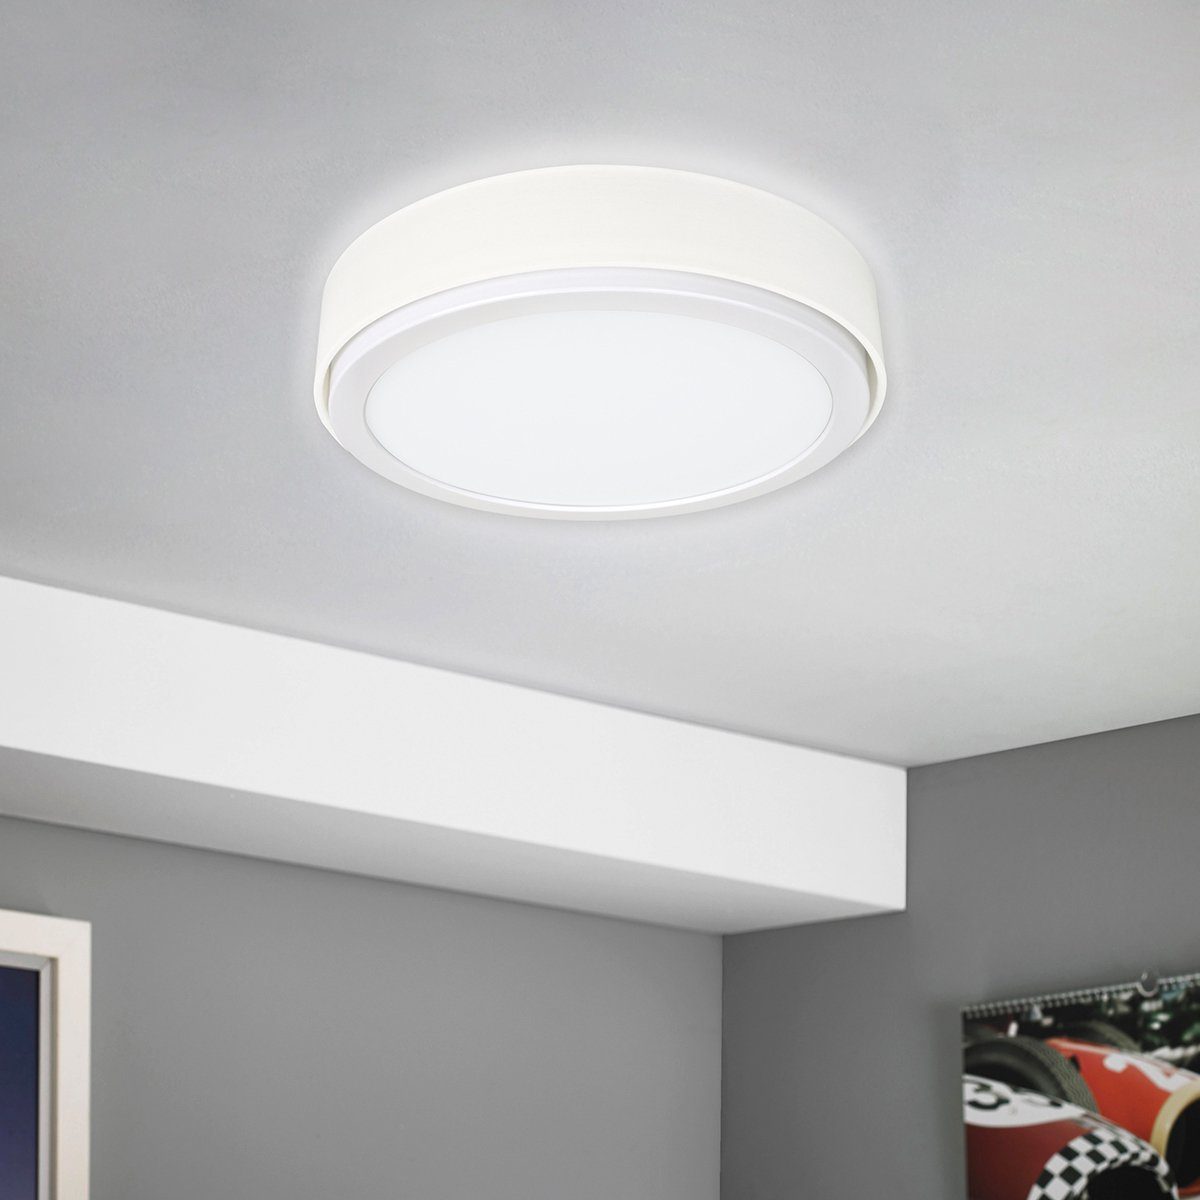 MeLiTec LED Deckenleuchte D85, warmweiß, LED, Panel, Leuchte, Wandleuchte, Deckenleuchte, 900 Lumen, Stoffschirm, Rund, Weiß | Deckenlampen